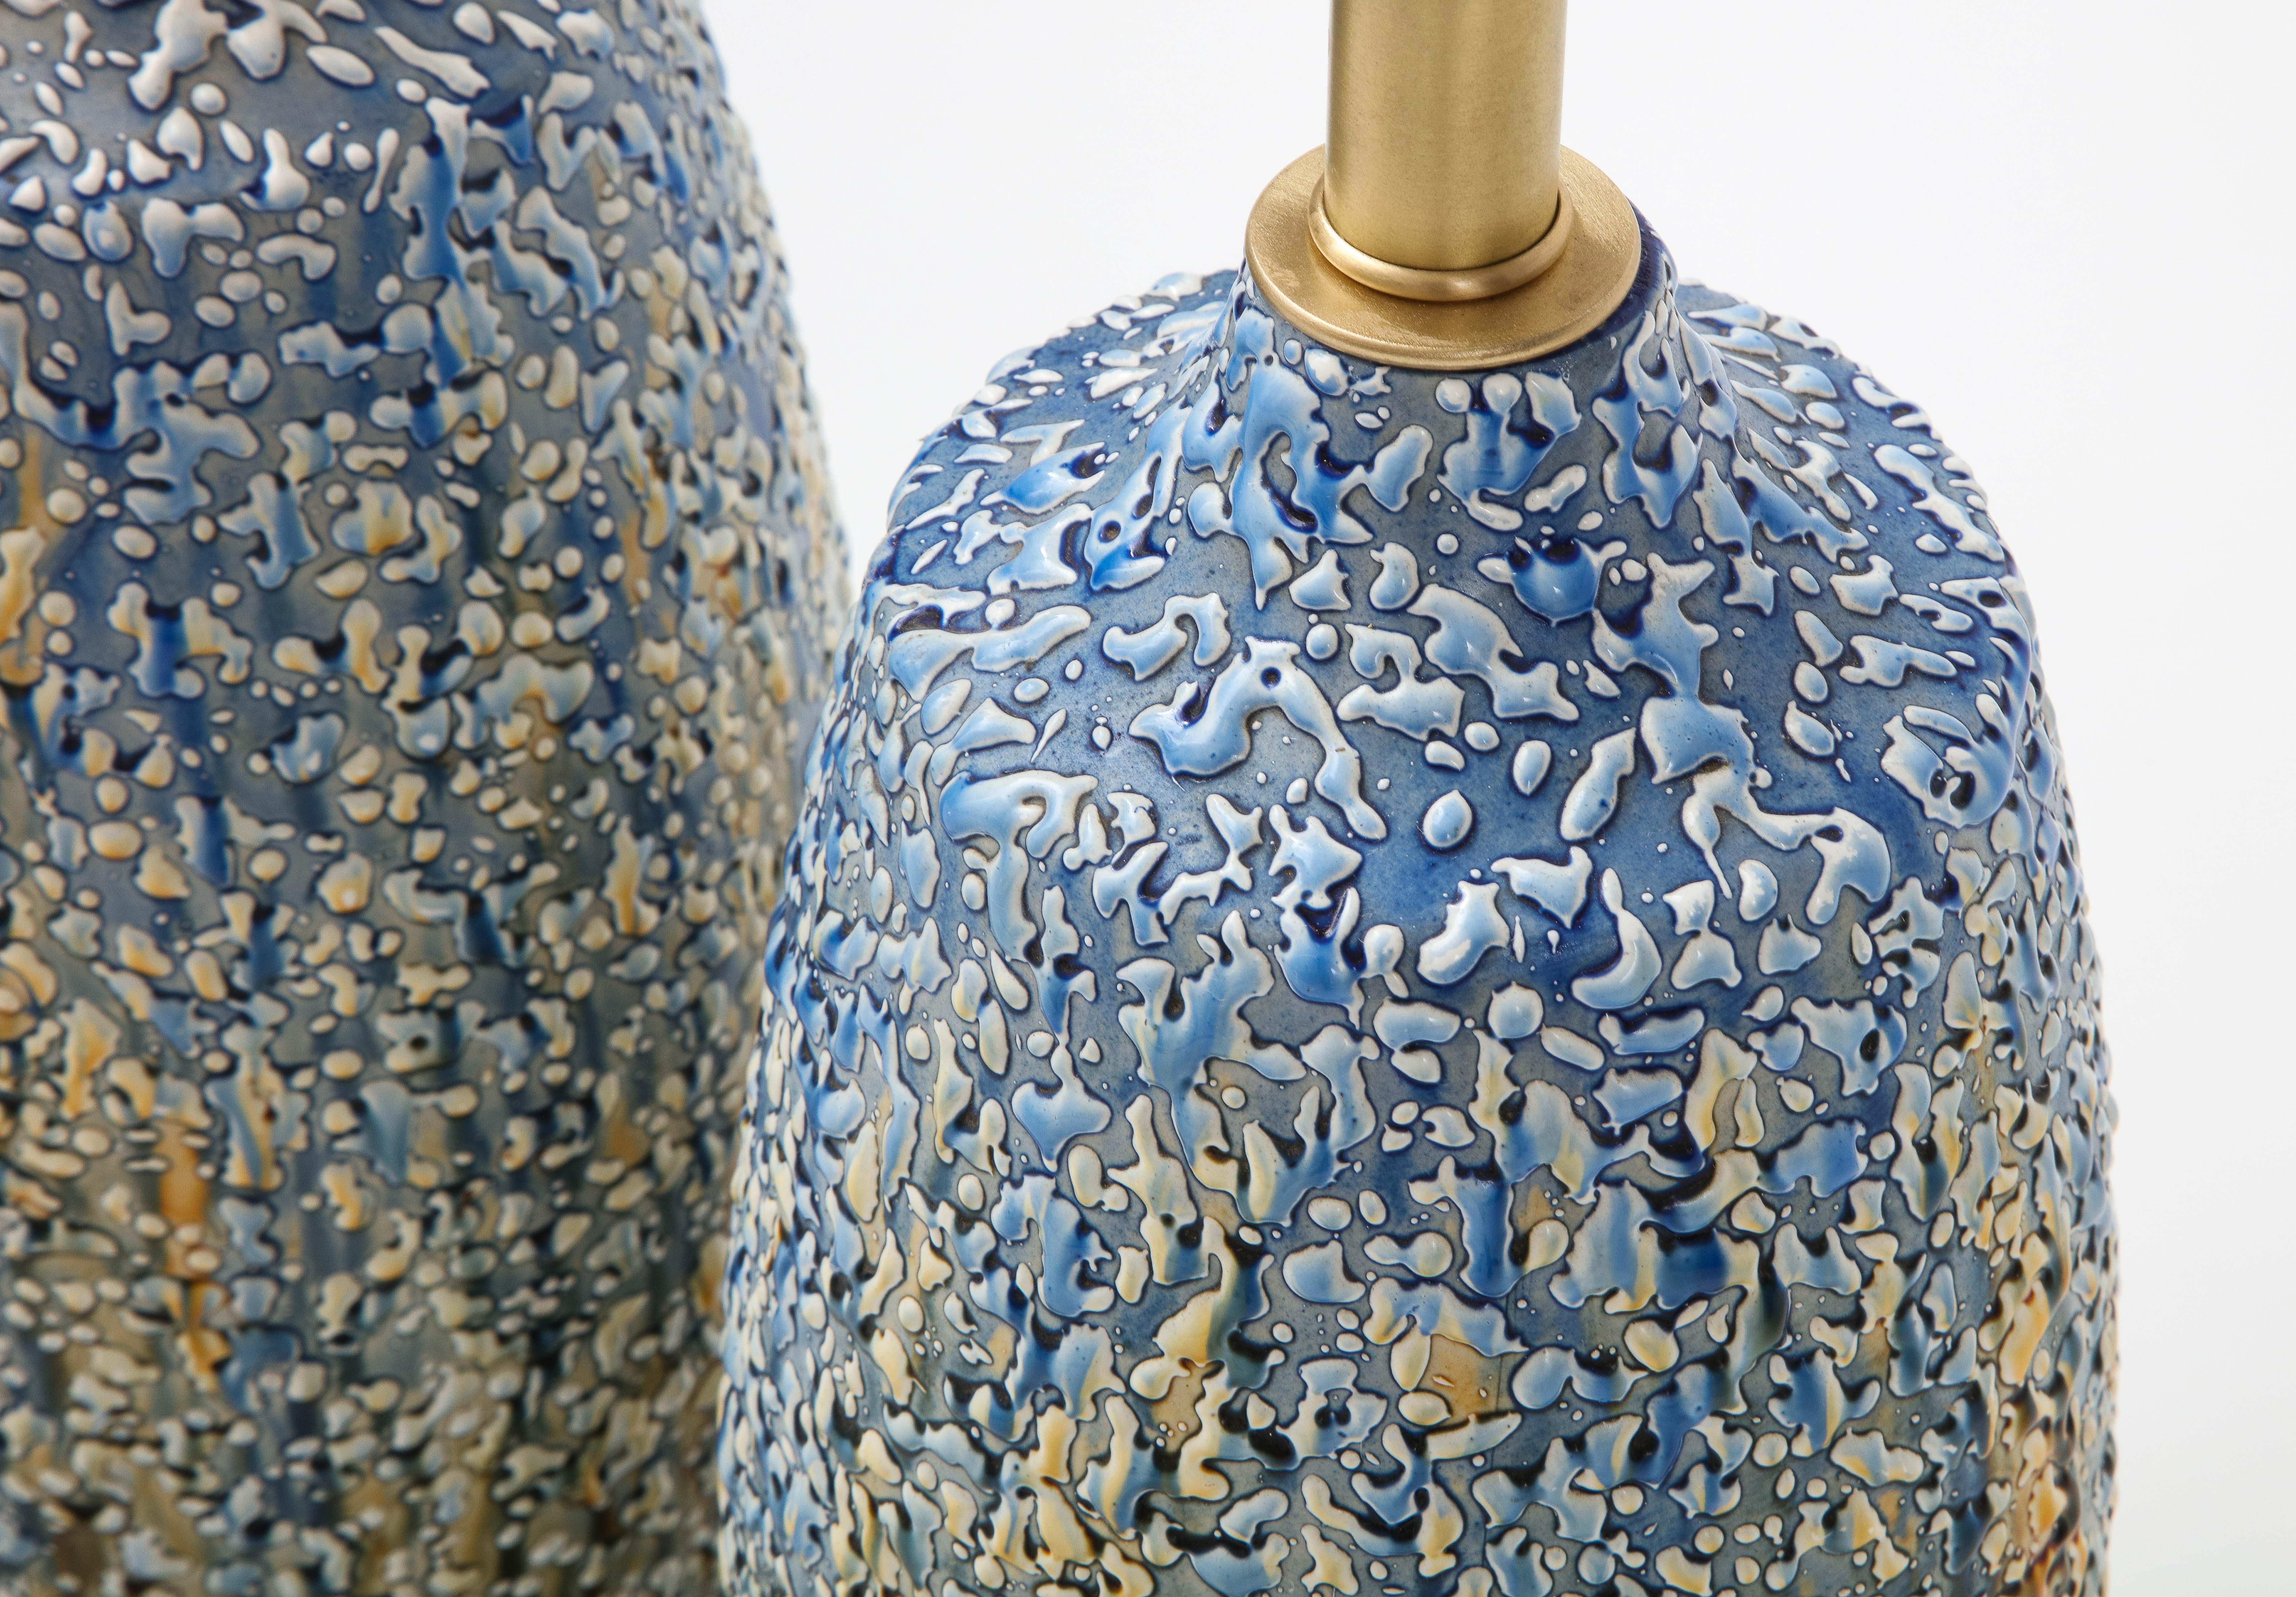 Blue, Polychrome Bubble Glazed Porcelain Lamps 3